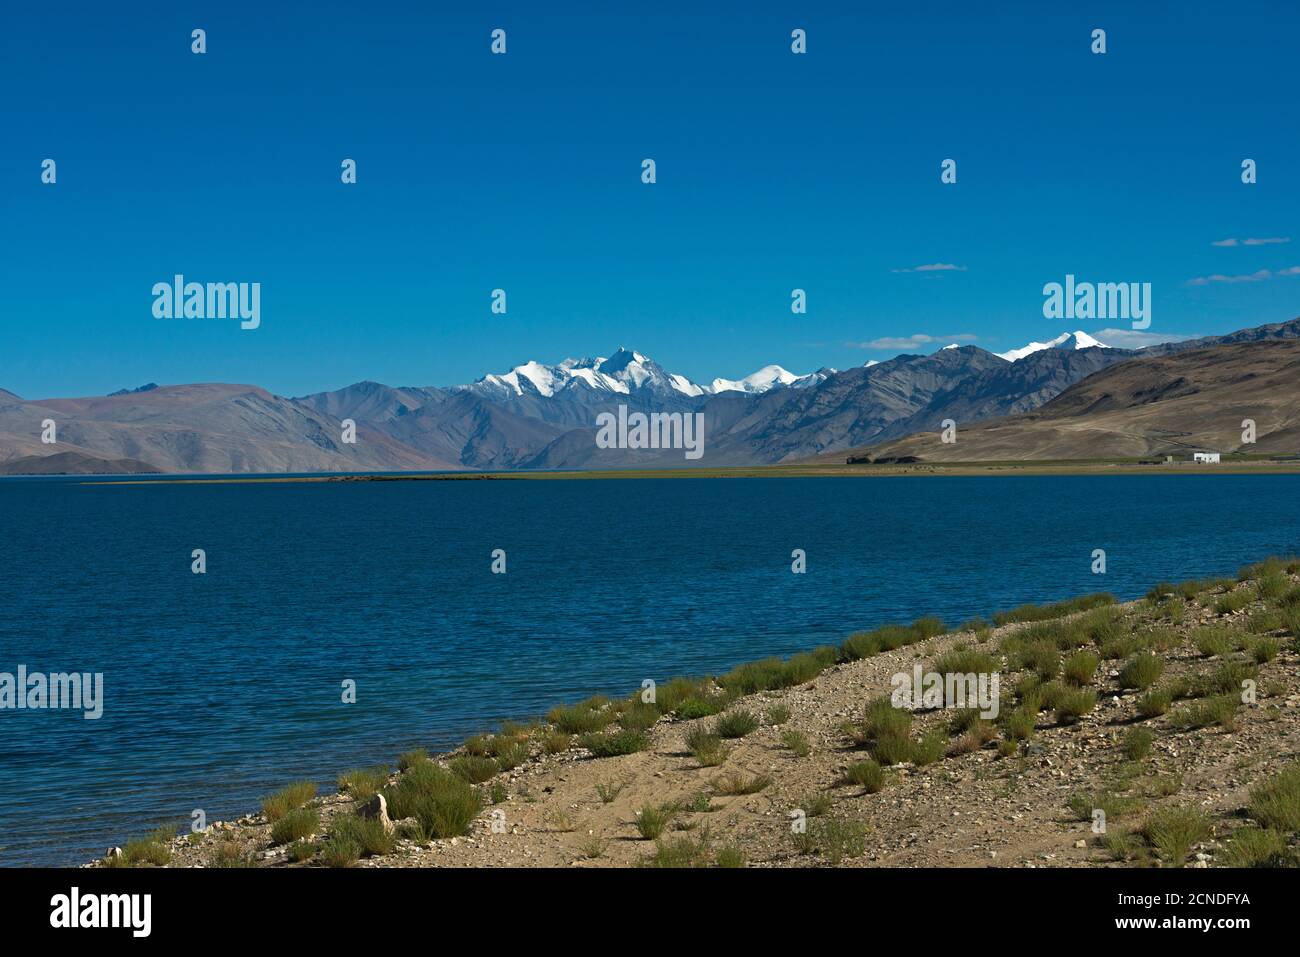 TSO Moriri o Lago di montagna, Ladakh, India. Il più grande dei laghi ad alta quota interamente all'interno dell'India. L'acqua è salmastra Foto Stock